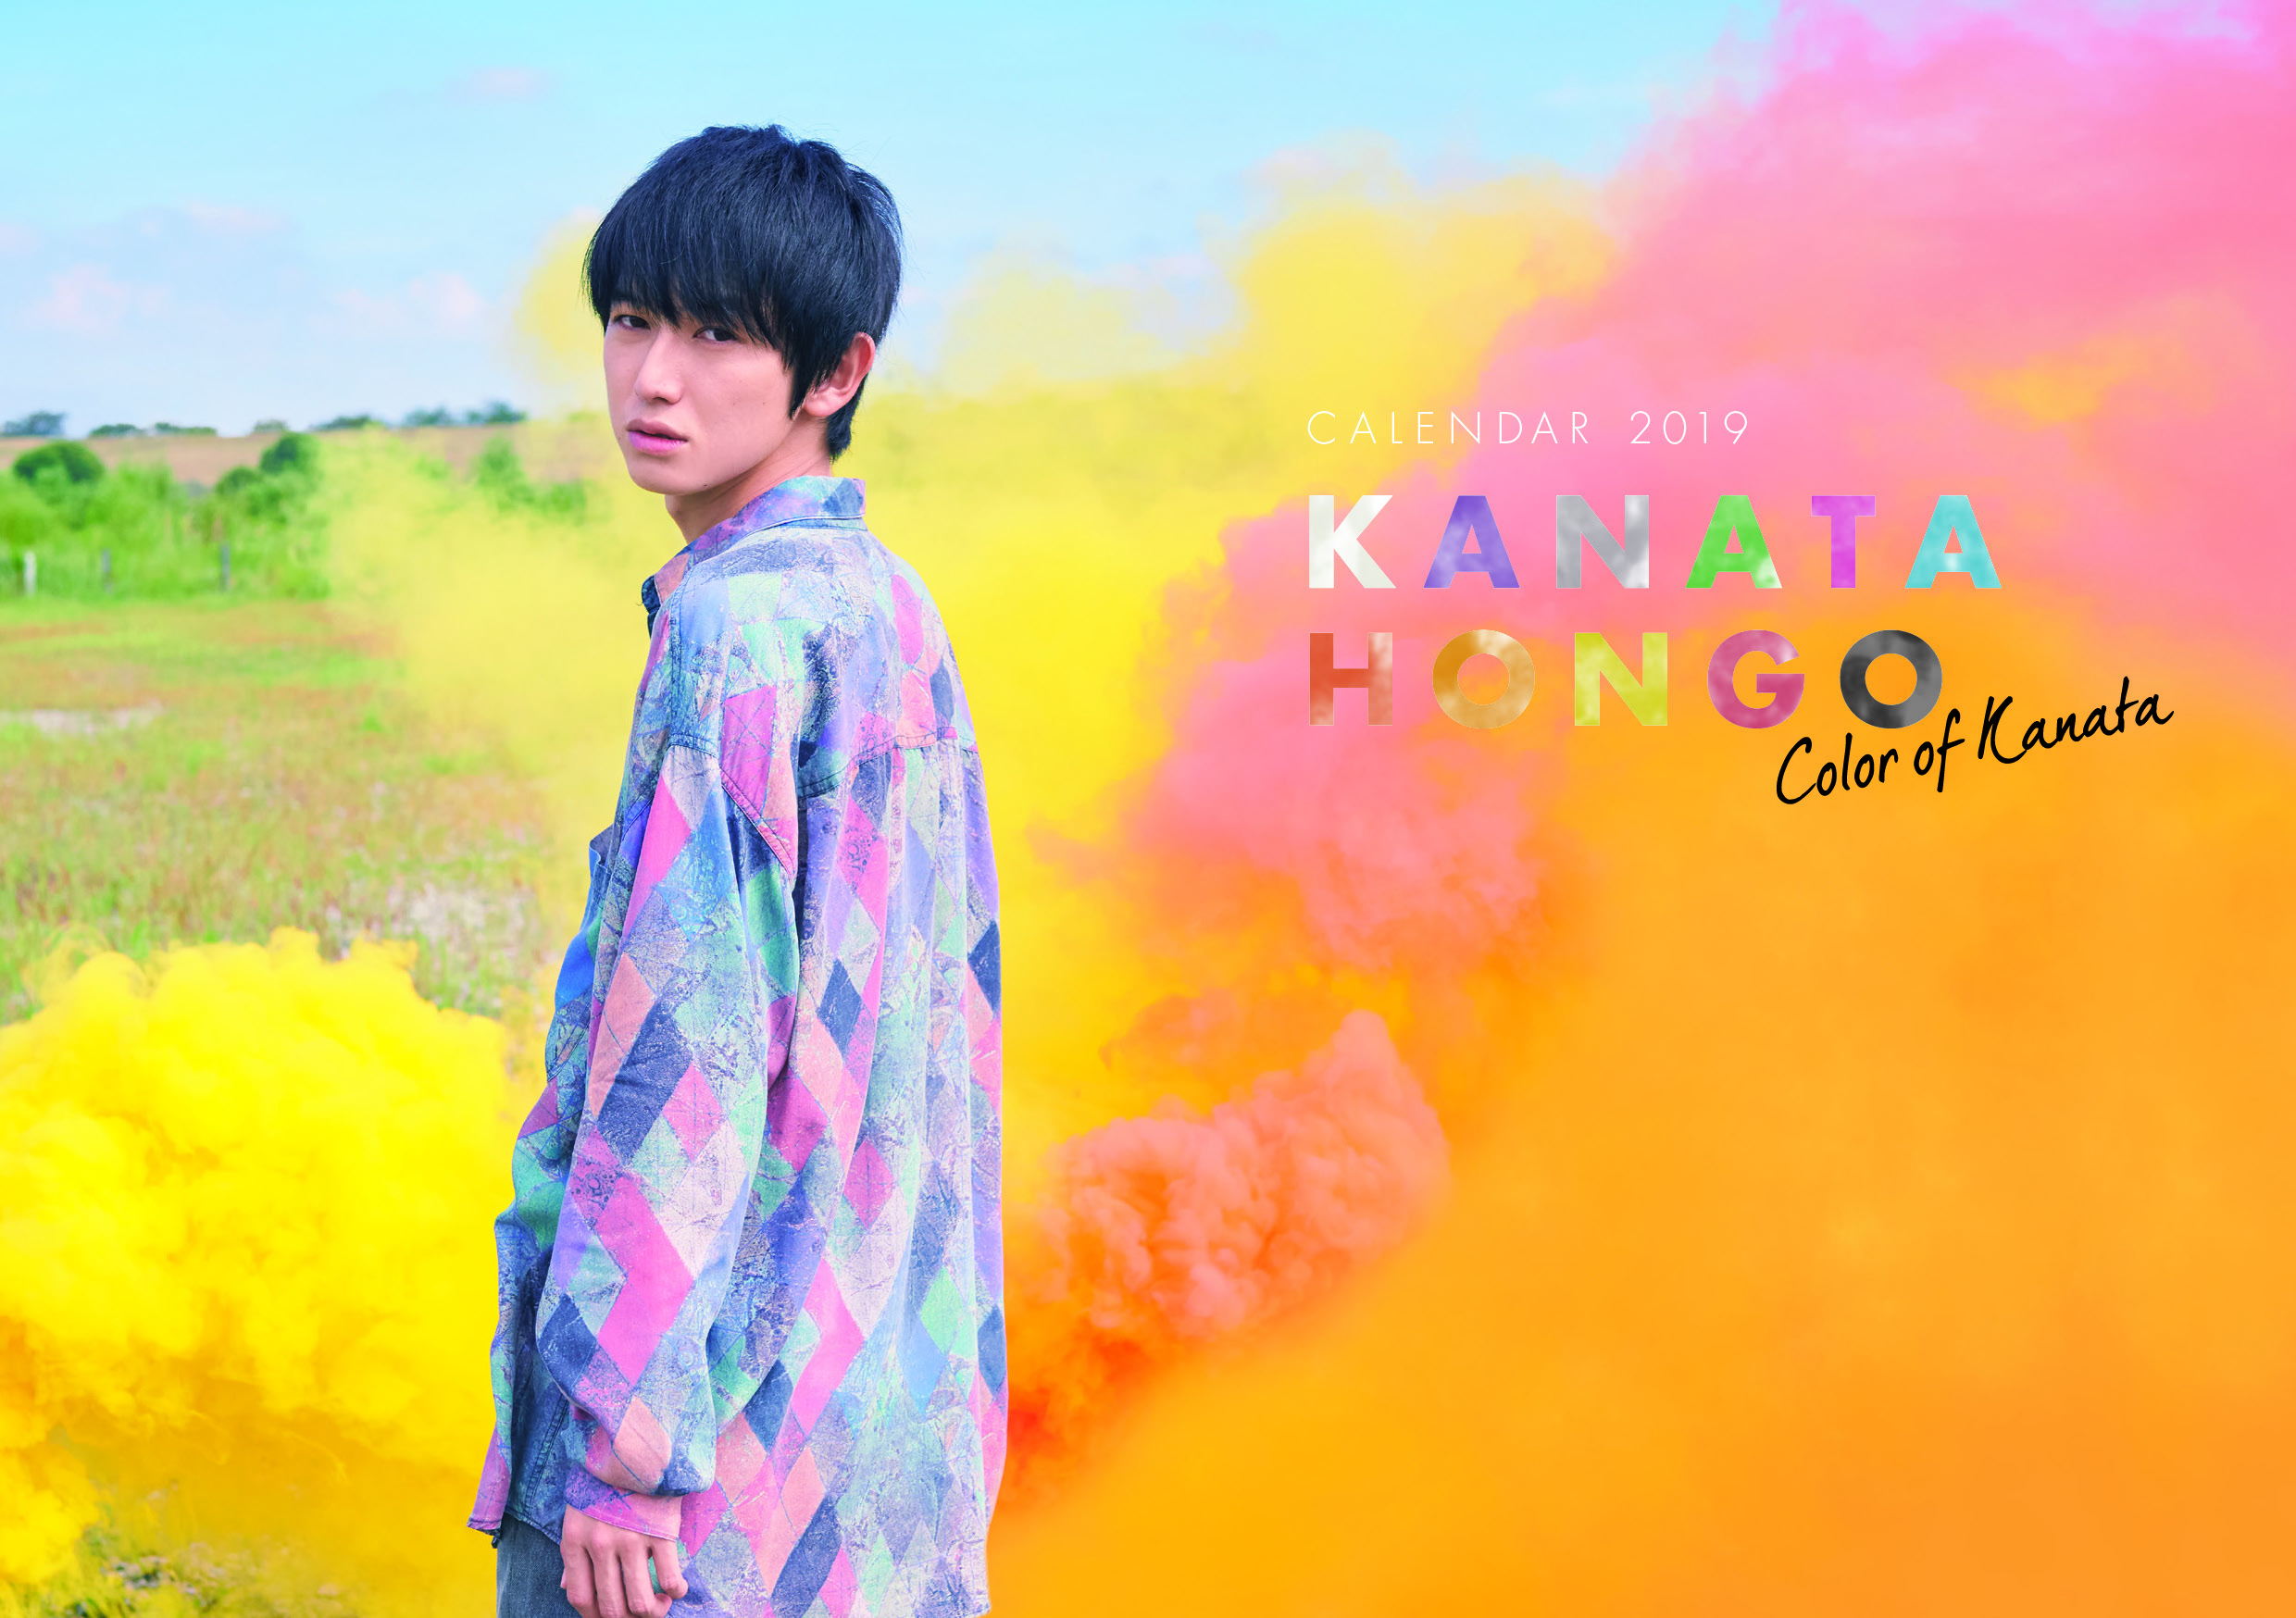 『本郷奏多カレンダー2019 -Color of Kanata-』